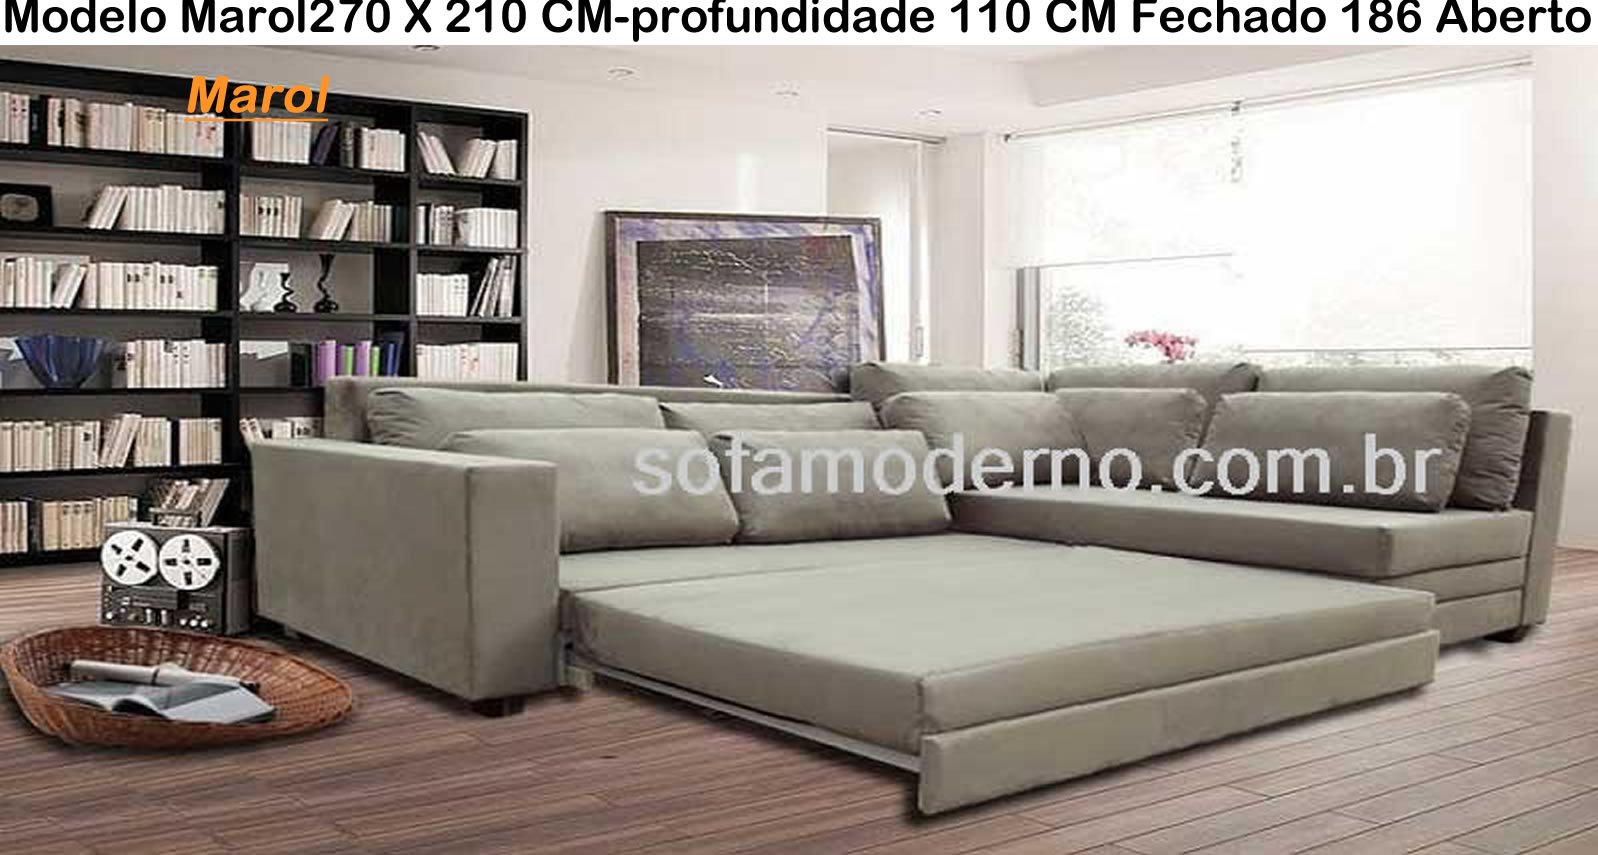 Details 48 sofá cama brasil